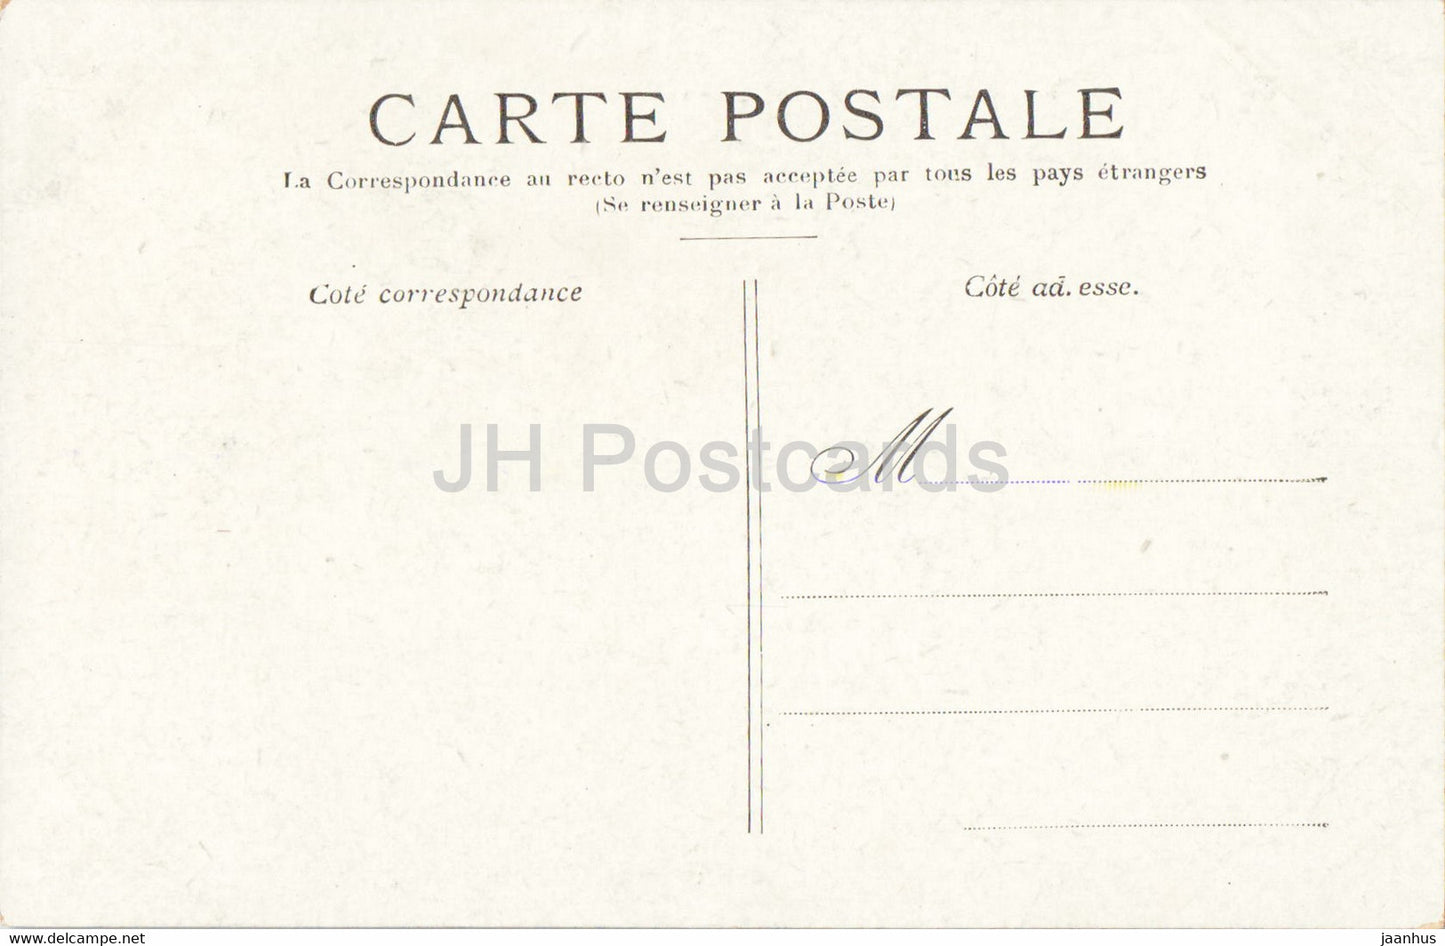 Versailles - Grand Trianon - alte Postkarte - Frankreich - unbenutzt